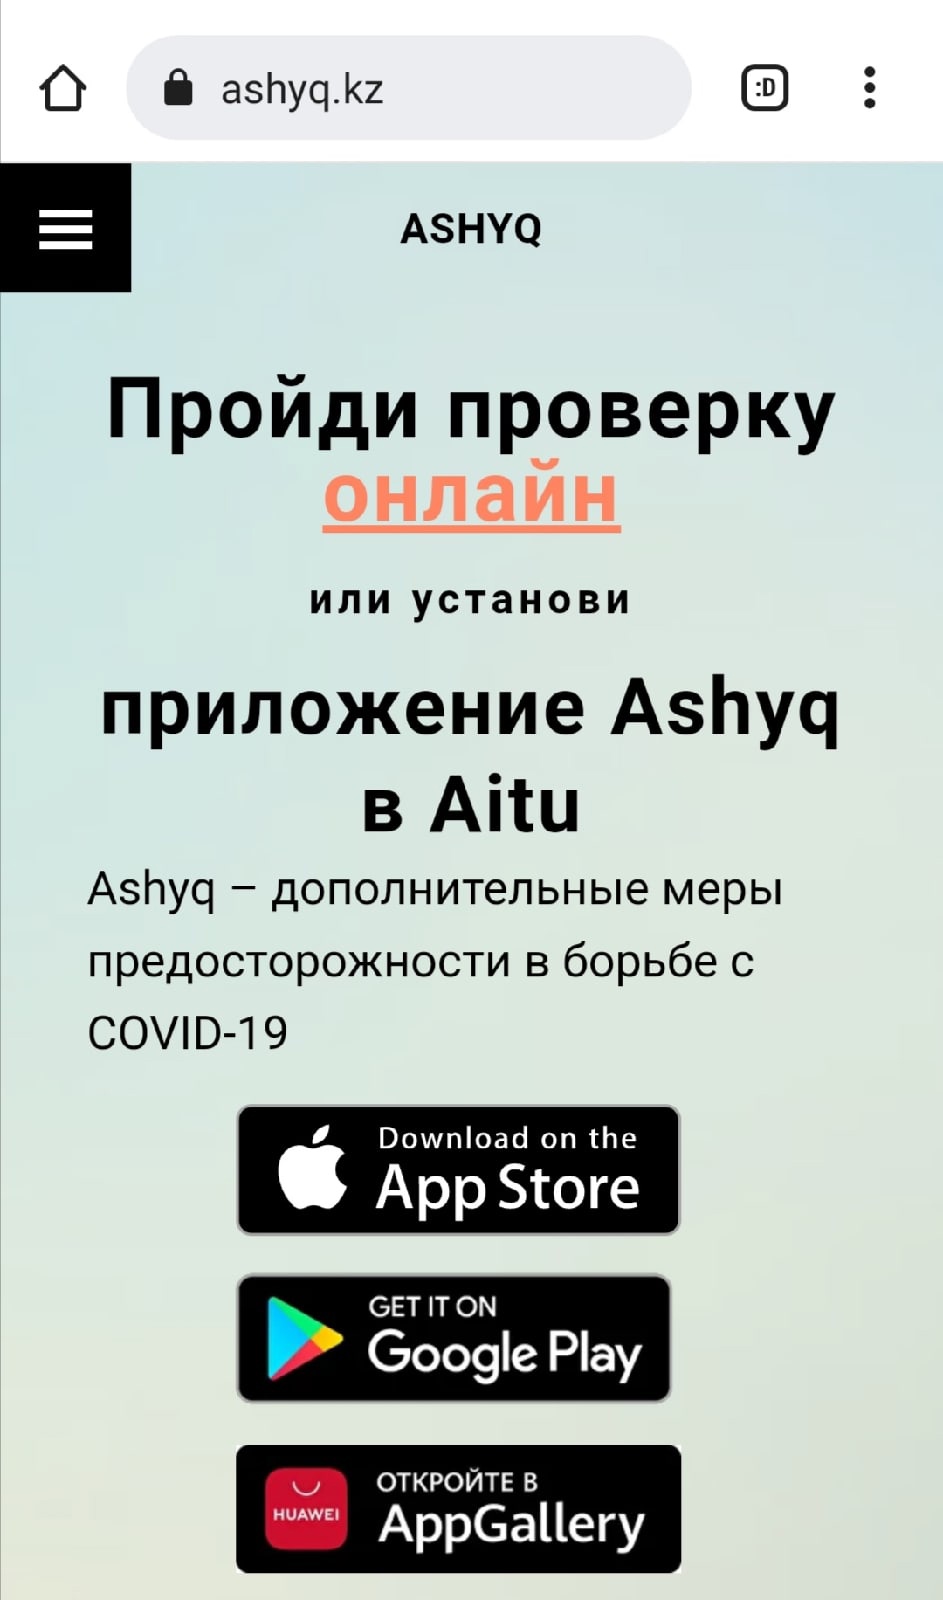 По словам нашего читателя, это приложение — аналог госуслуг в Казахстане